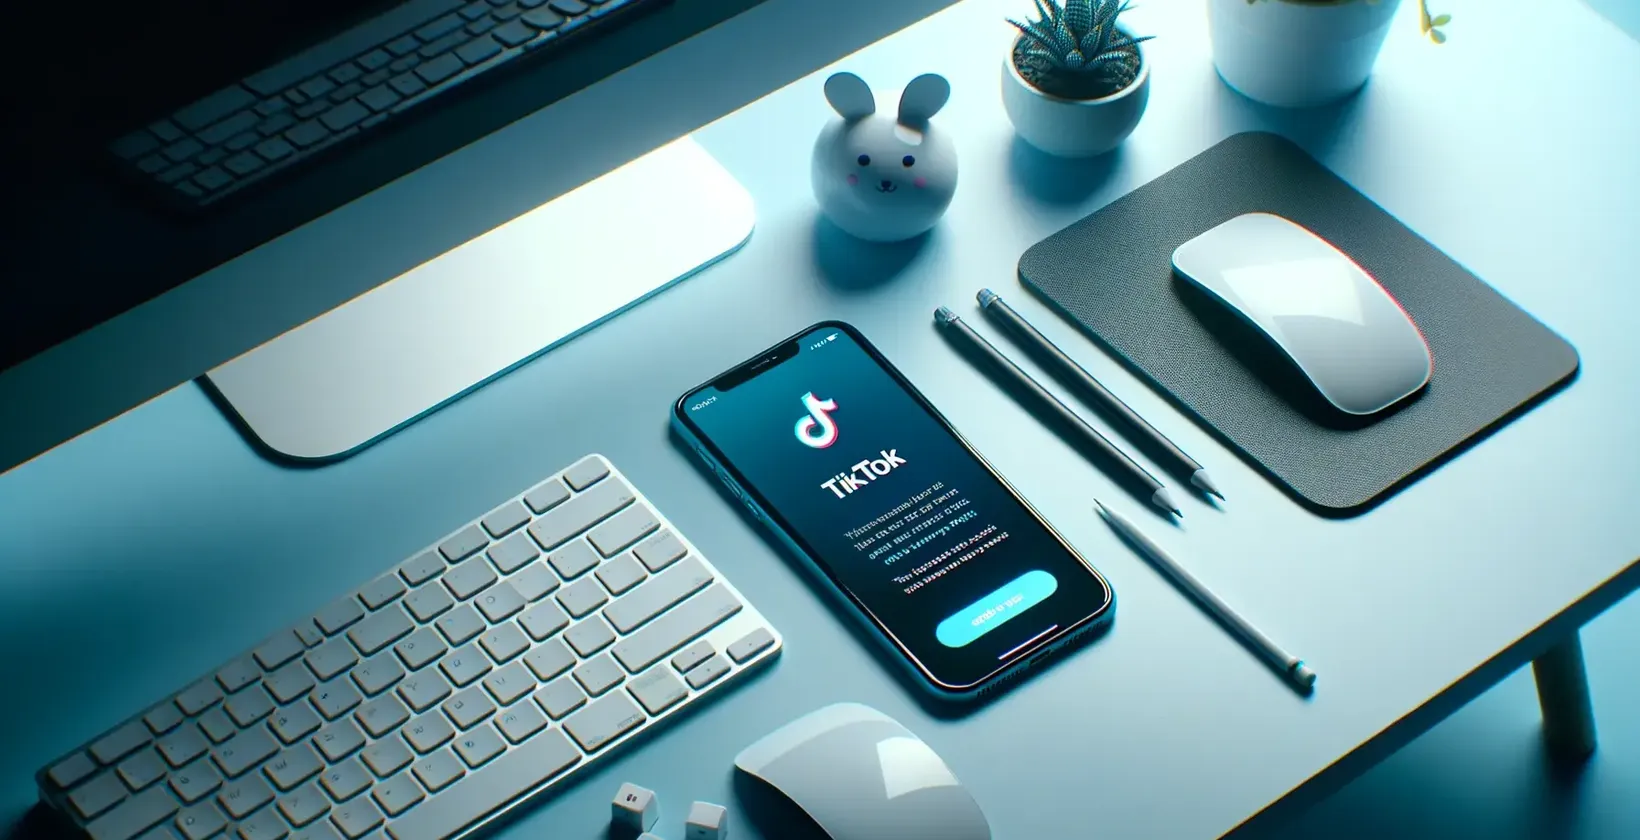 Smartfon z otwartą aplikacją TikTok, otoczony klawiaturą, myszą i elementami pulpitu na podświetlonym na niebiesko stole.